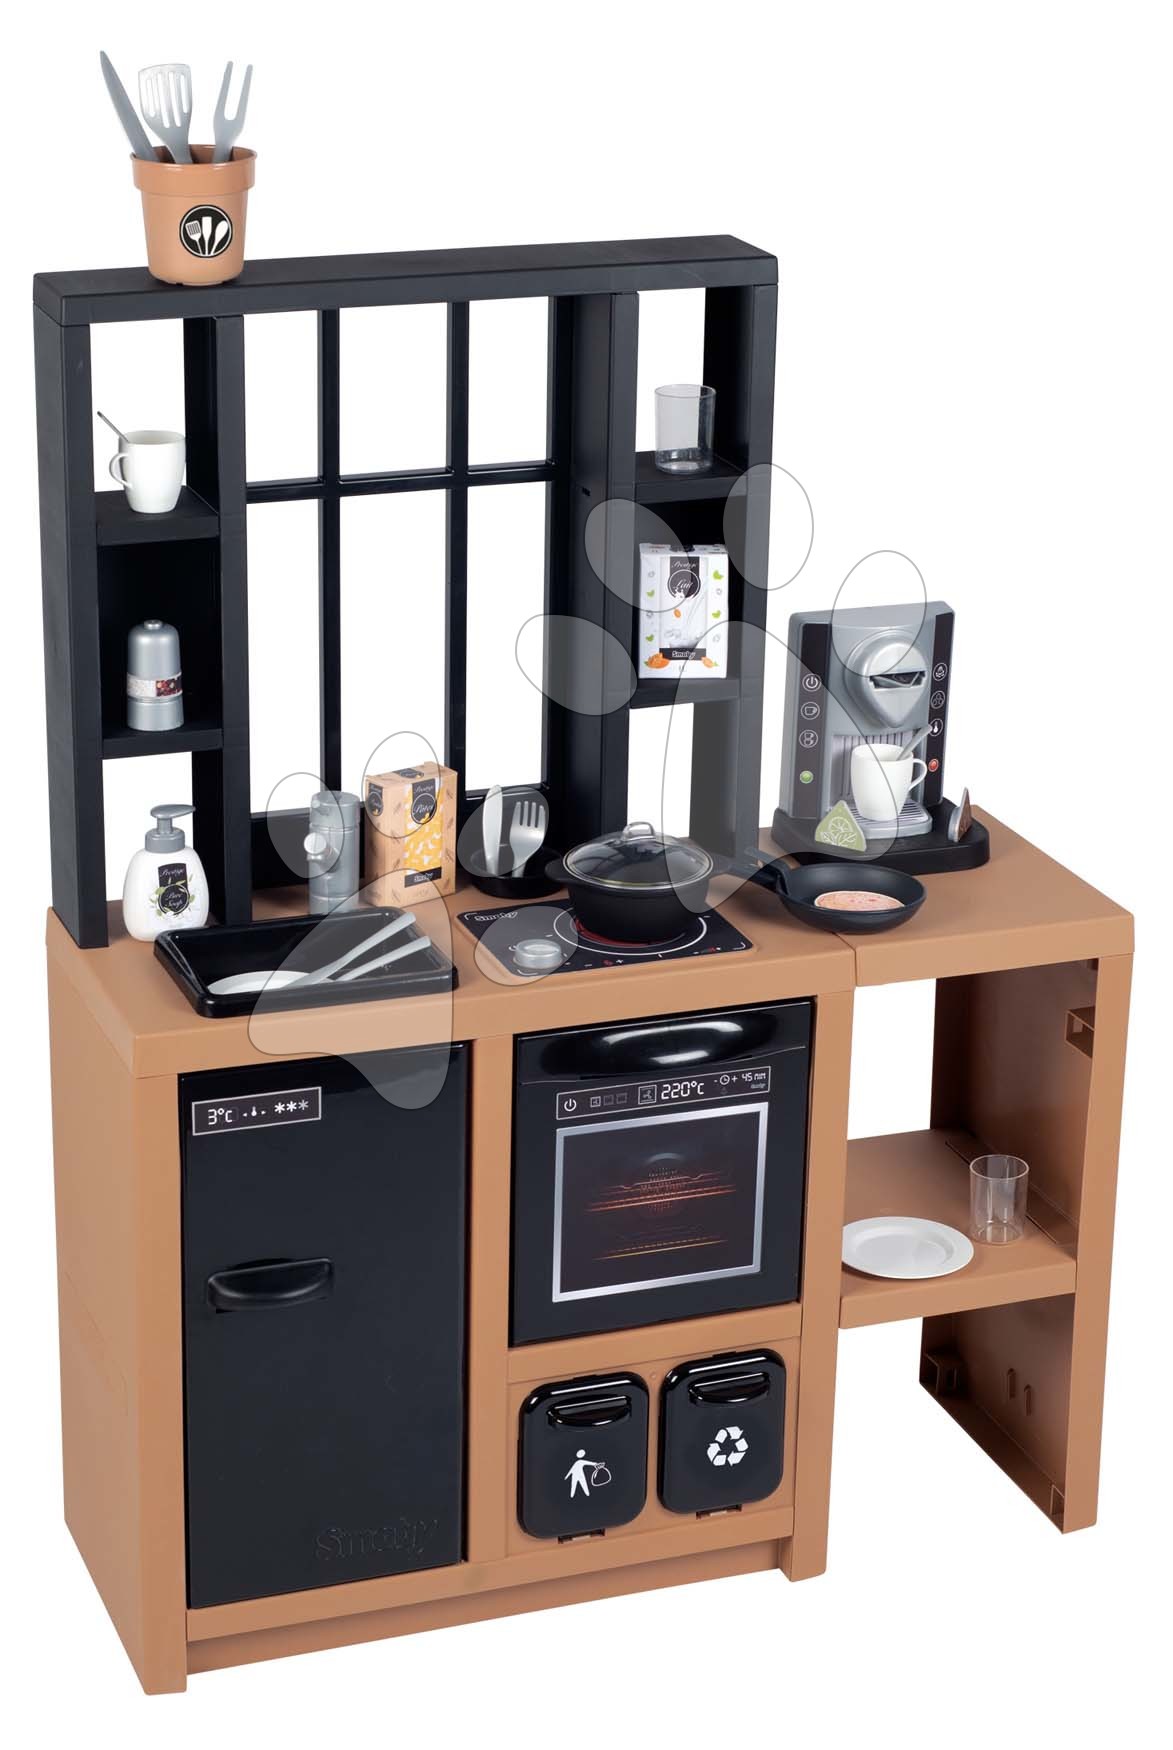 Obyčejné kuchyňky - Kuchyňka moderní Loft Industrial Kitchen Smoby s kávovarem a funkčními spotřebiči a 32 doplňky 50 cm pracovní deska